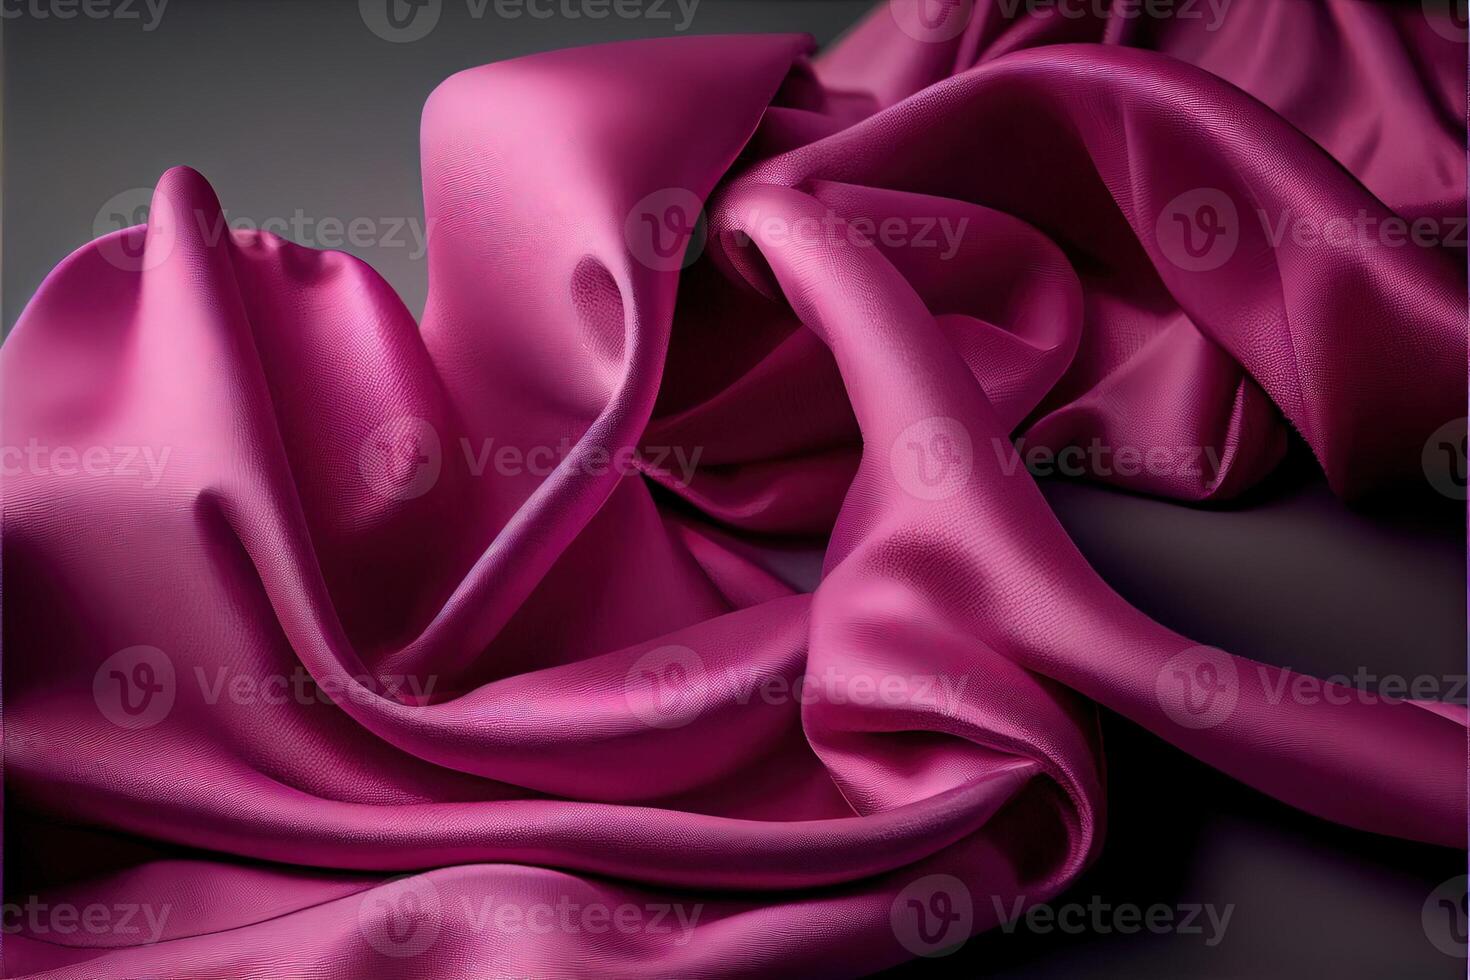 generatief ai illustratie van zacht magenta, roze kleding stof foto